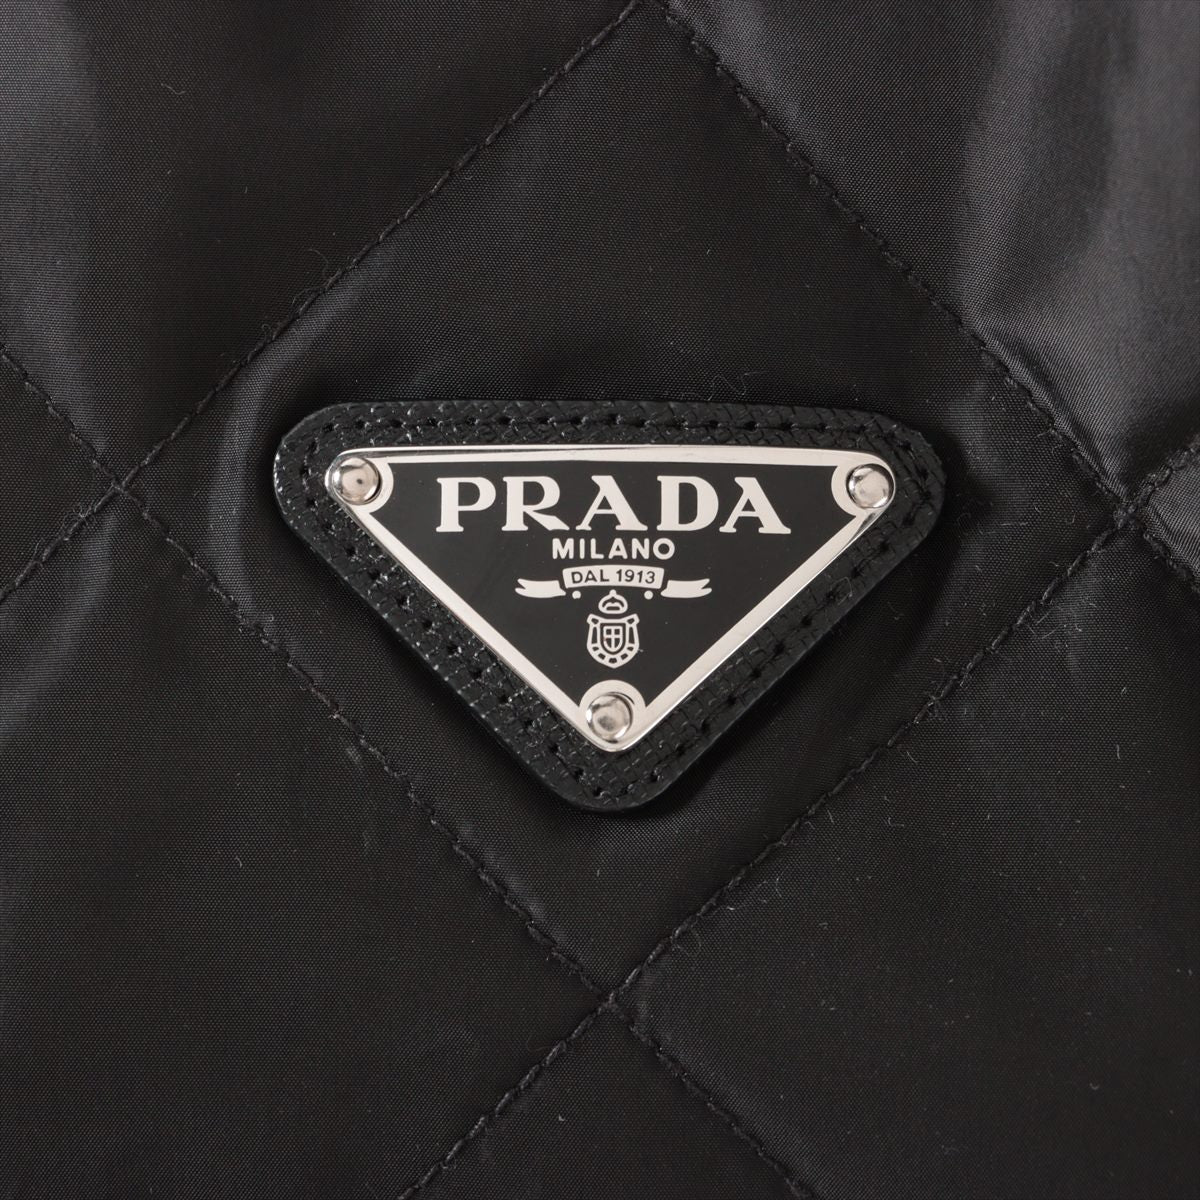 プラダ トライアングルロゴ 22年 ナイロン キルティングジャケット 50 メンズ ブラック  SGH036 フード収納